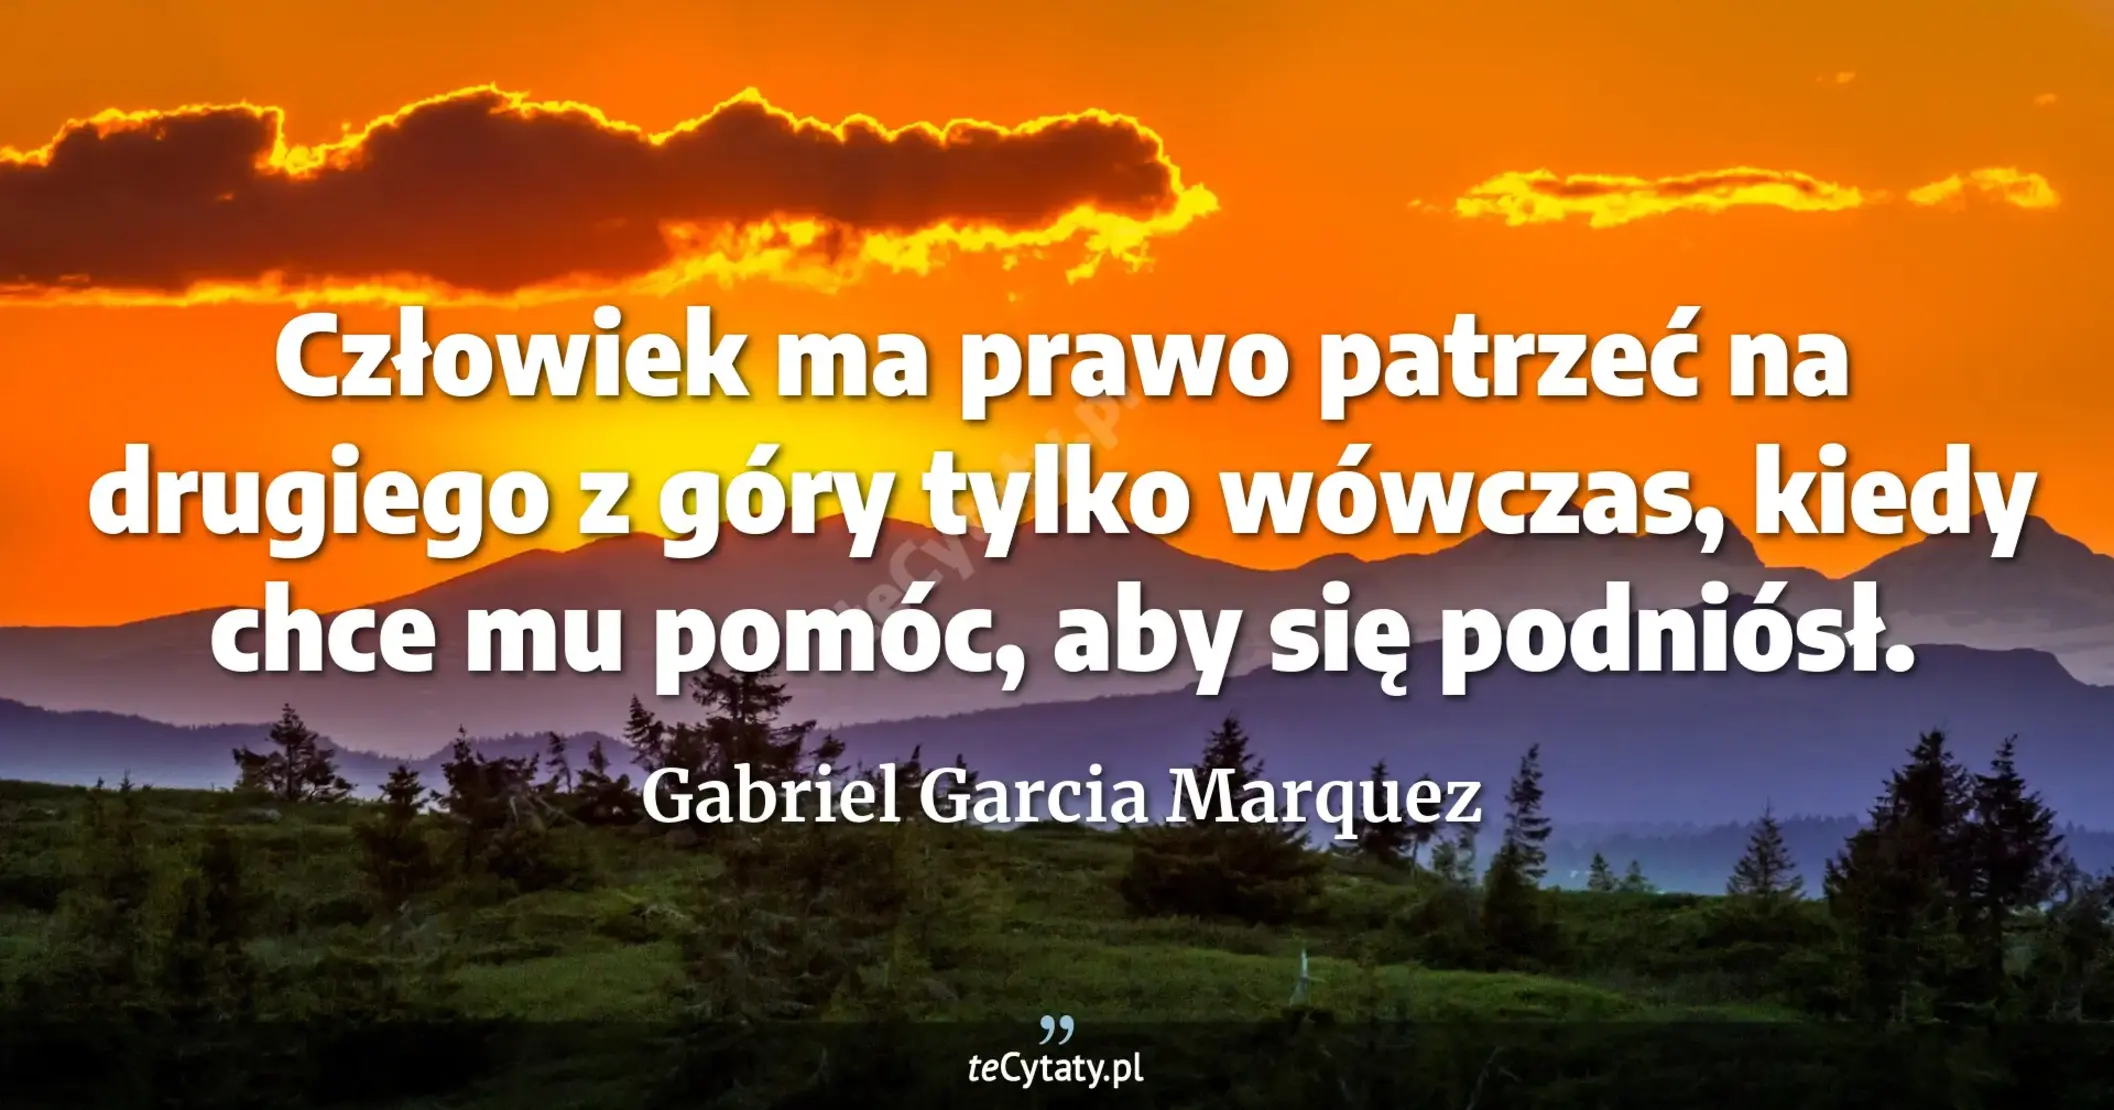 Człowiek ma prawo patrzeć na drugiego z góry tylko wówczas, kiedy chce mu pomóc, aby się podniósł. - Gabriel Garcia Marquez